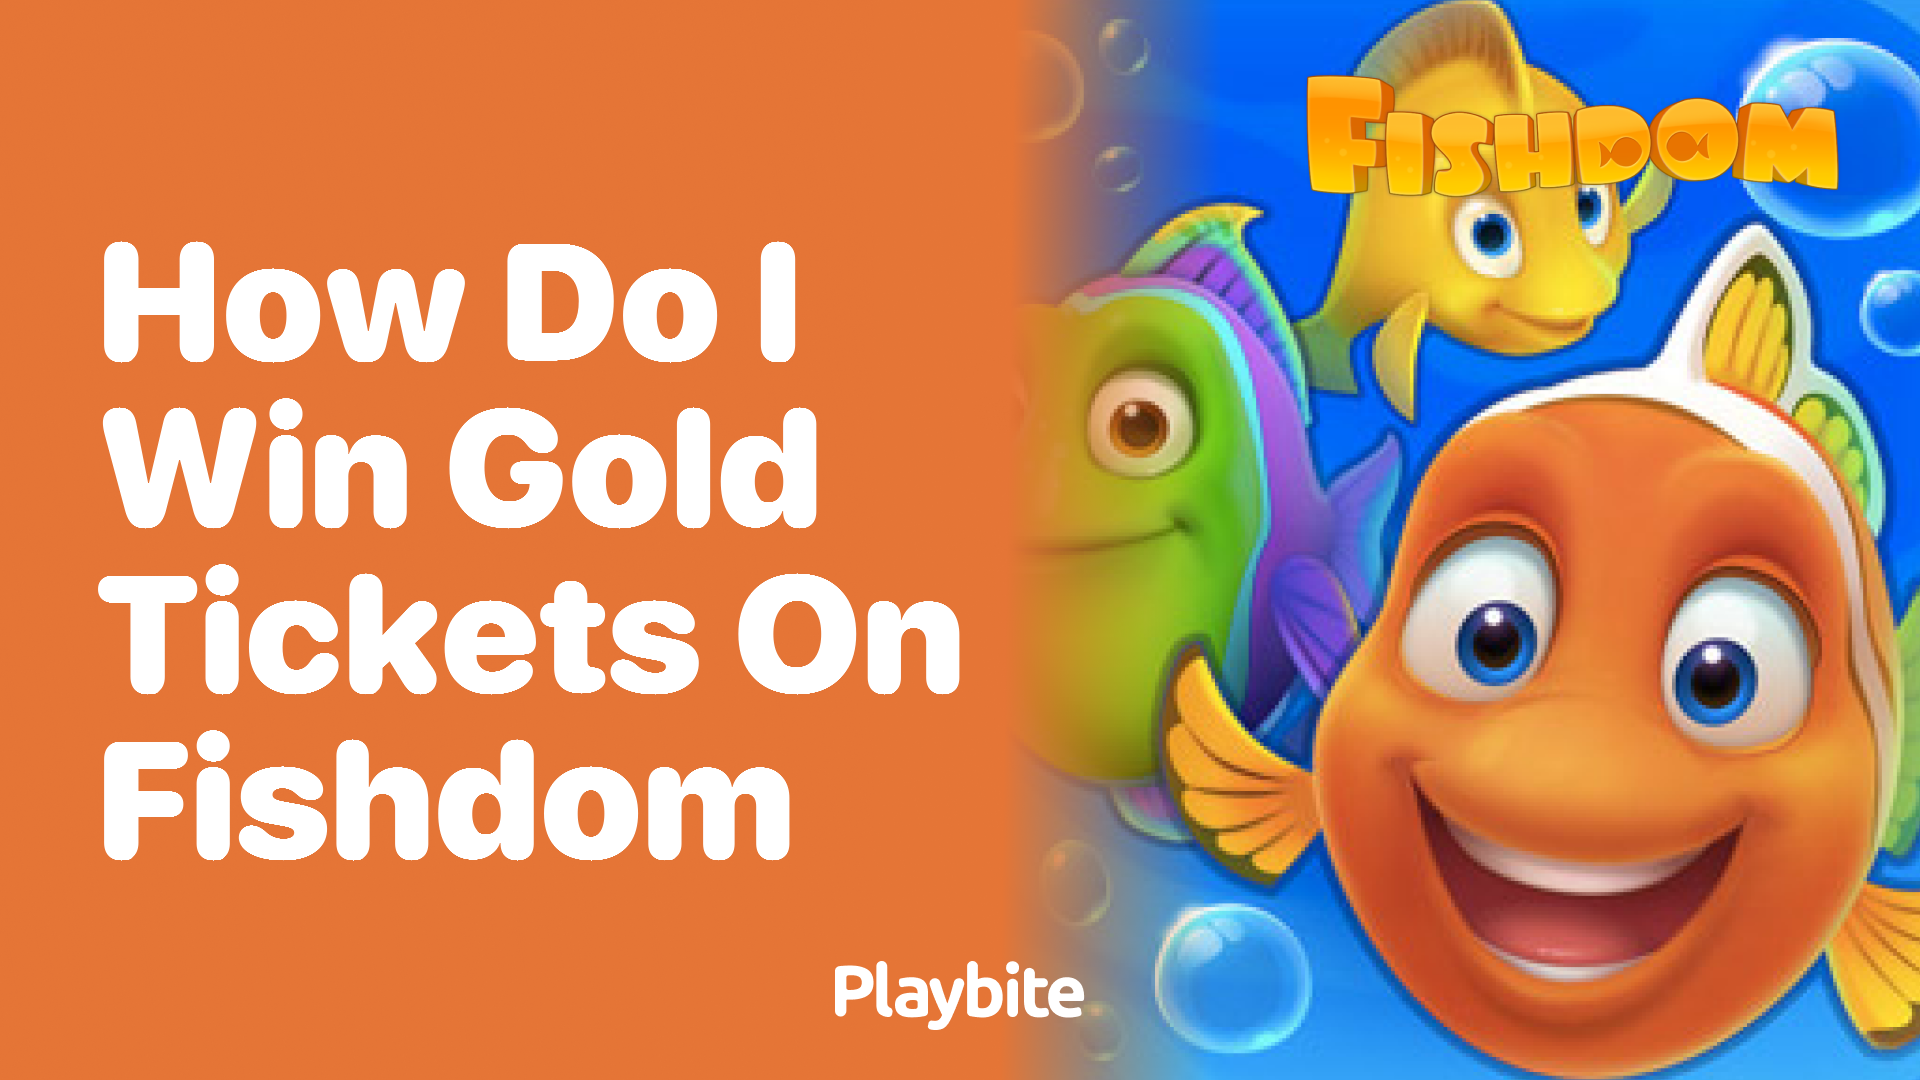 How Do I Win Gold Tickets on Fishdom?